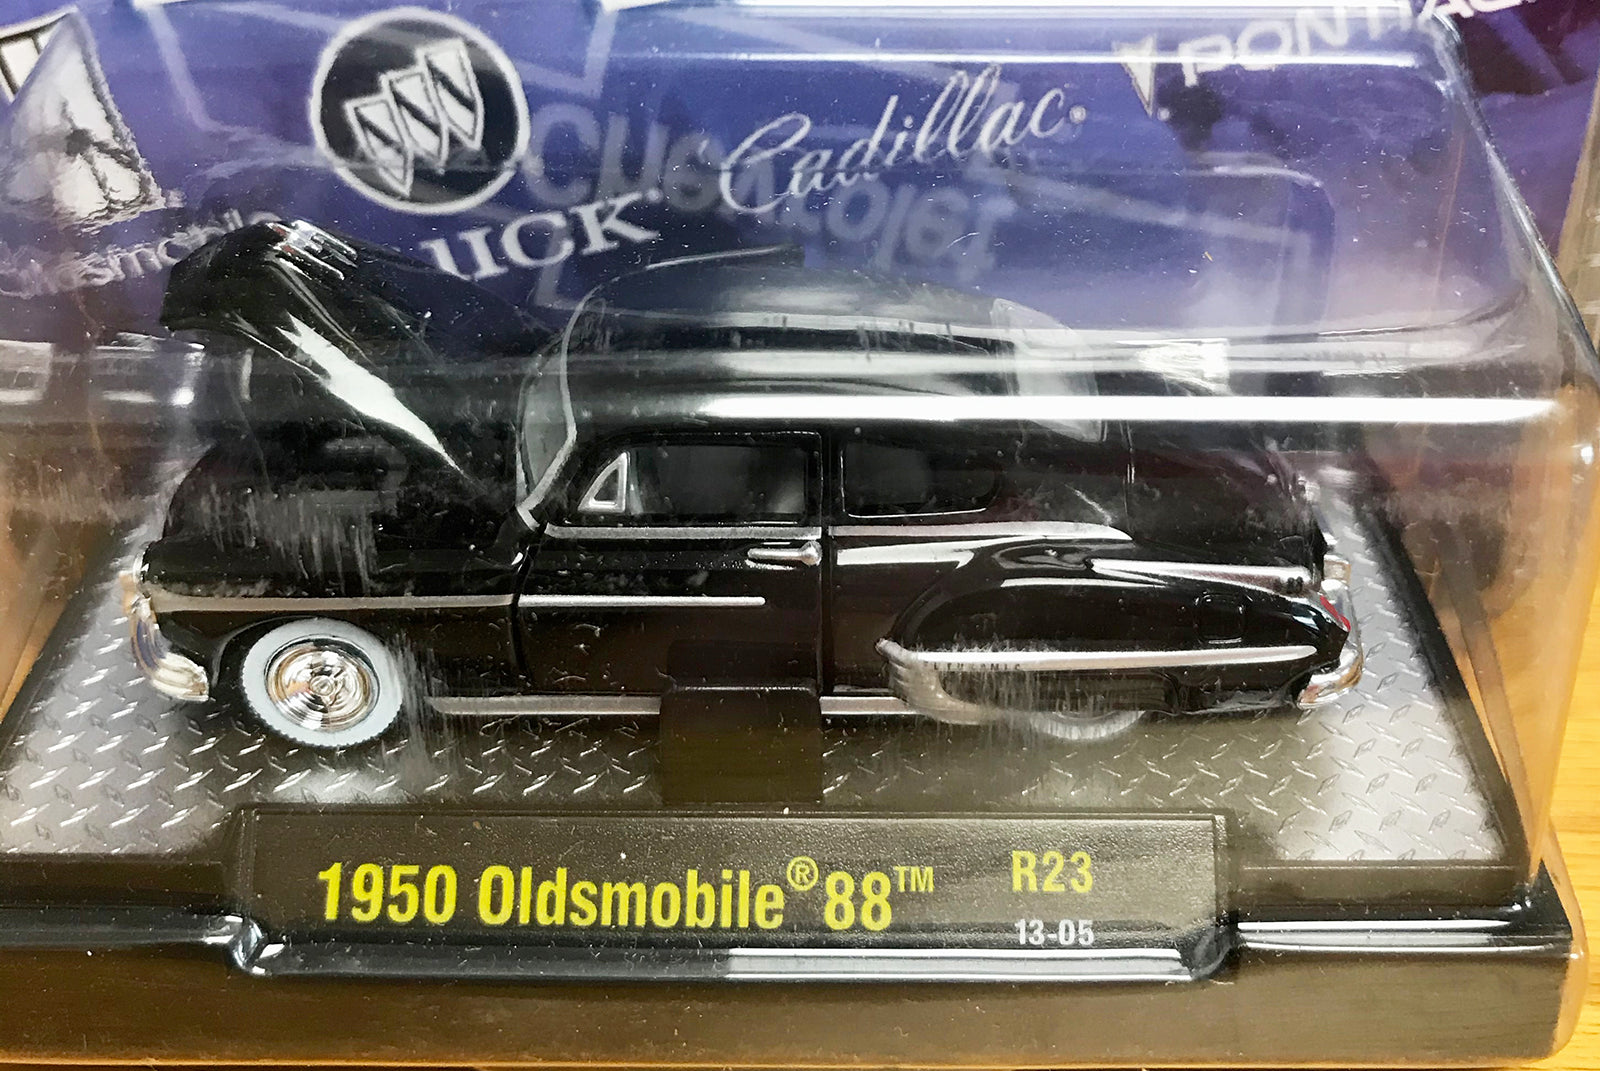 S 1950 Oldsmobile 88 - Black